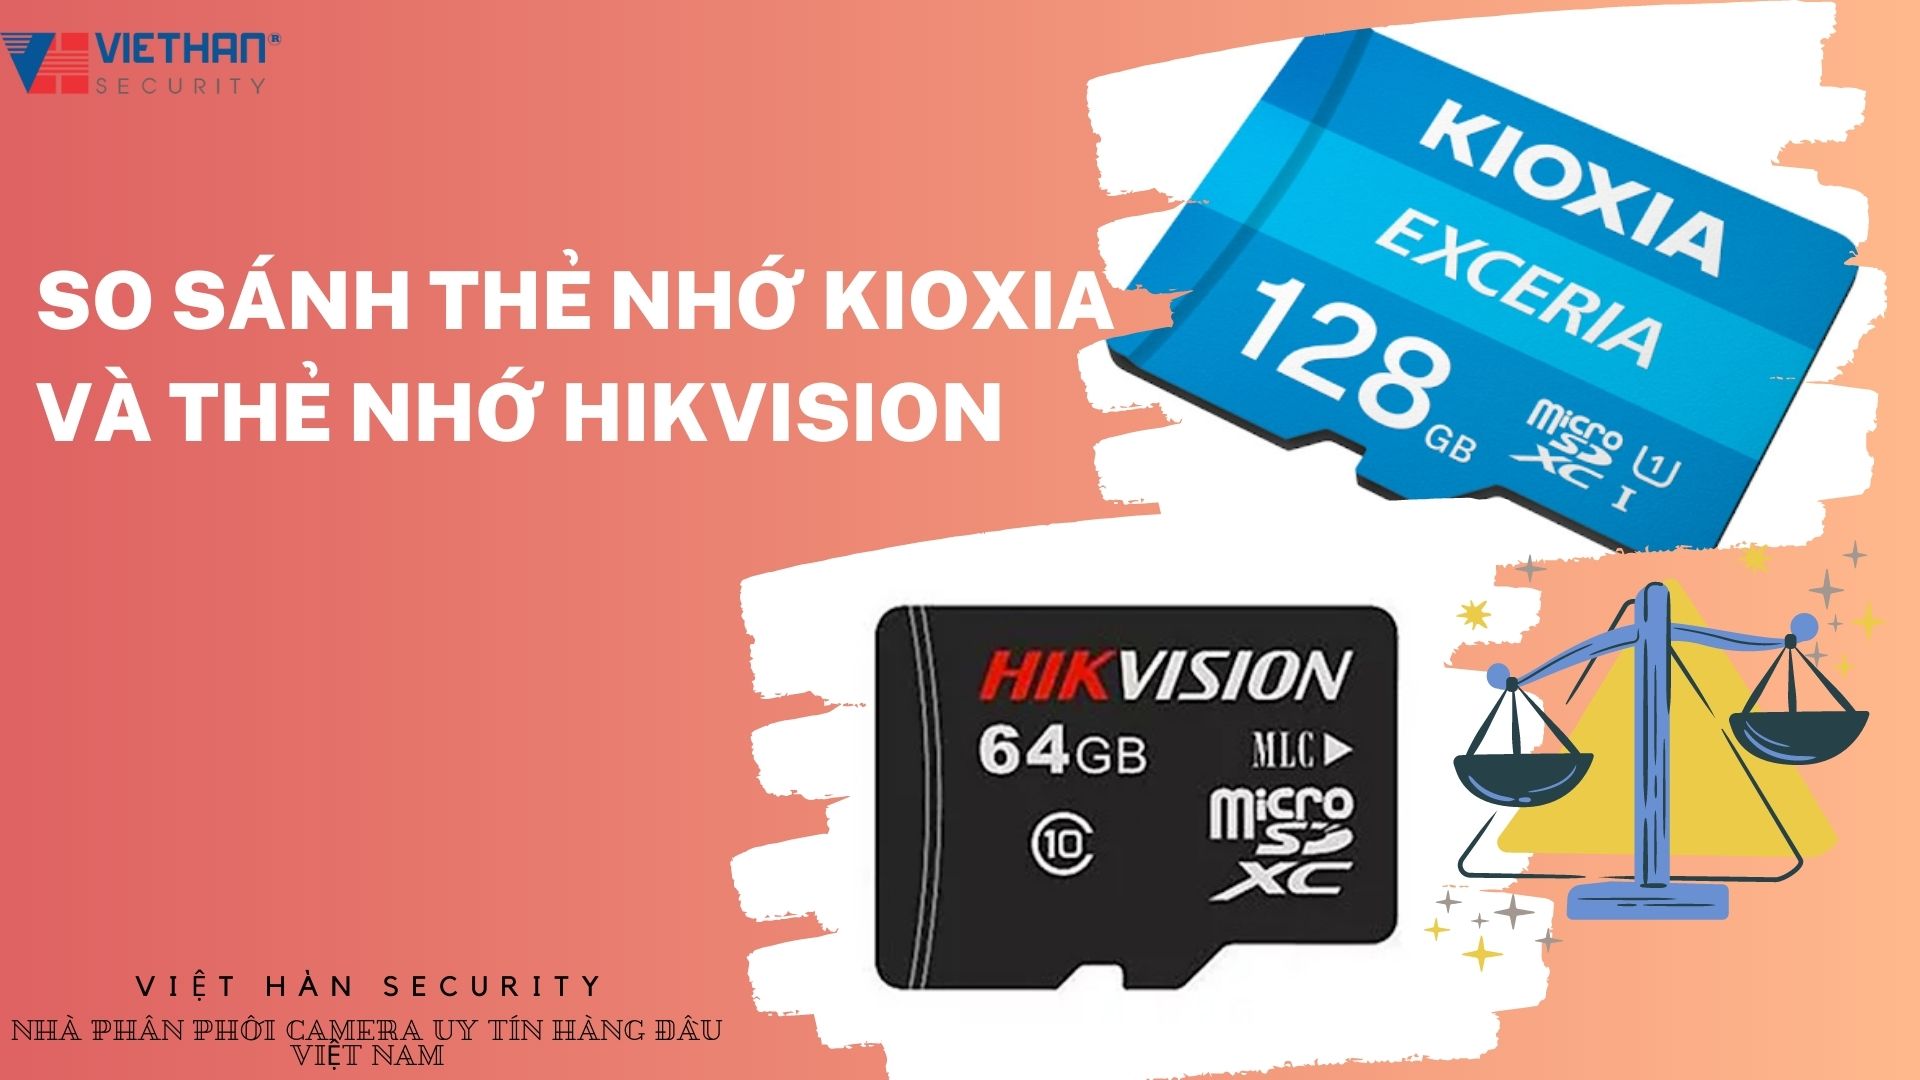 So sánh thẻ nhớ Kioxia và thẻ nhớ Hikvision